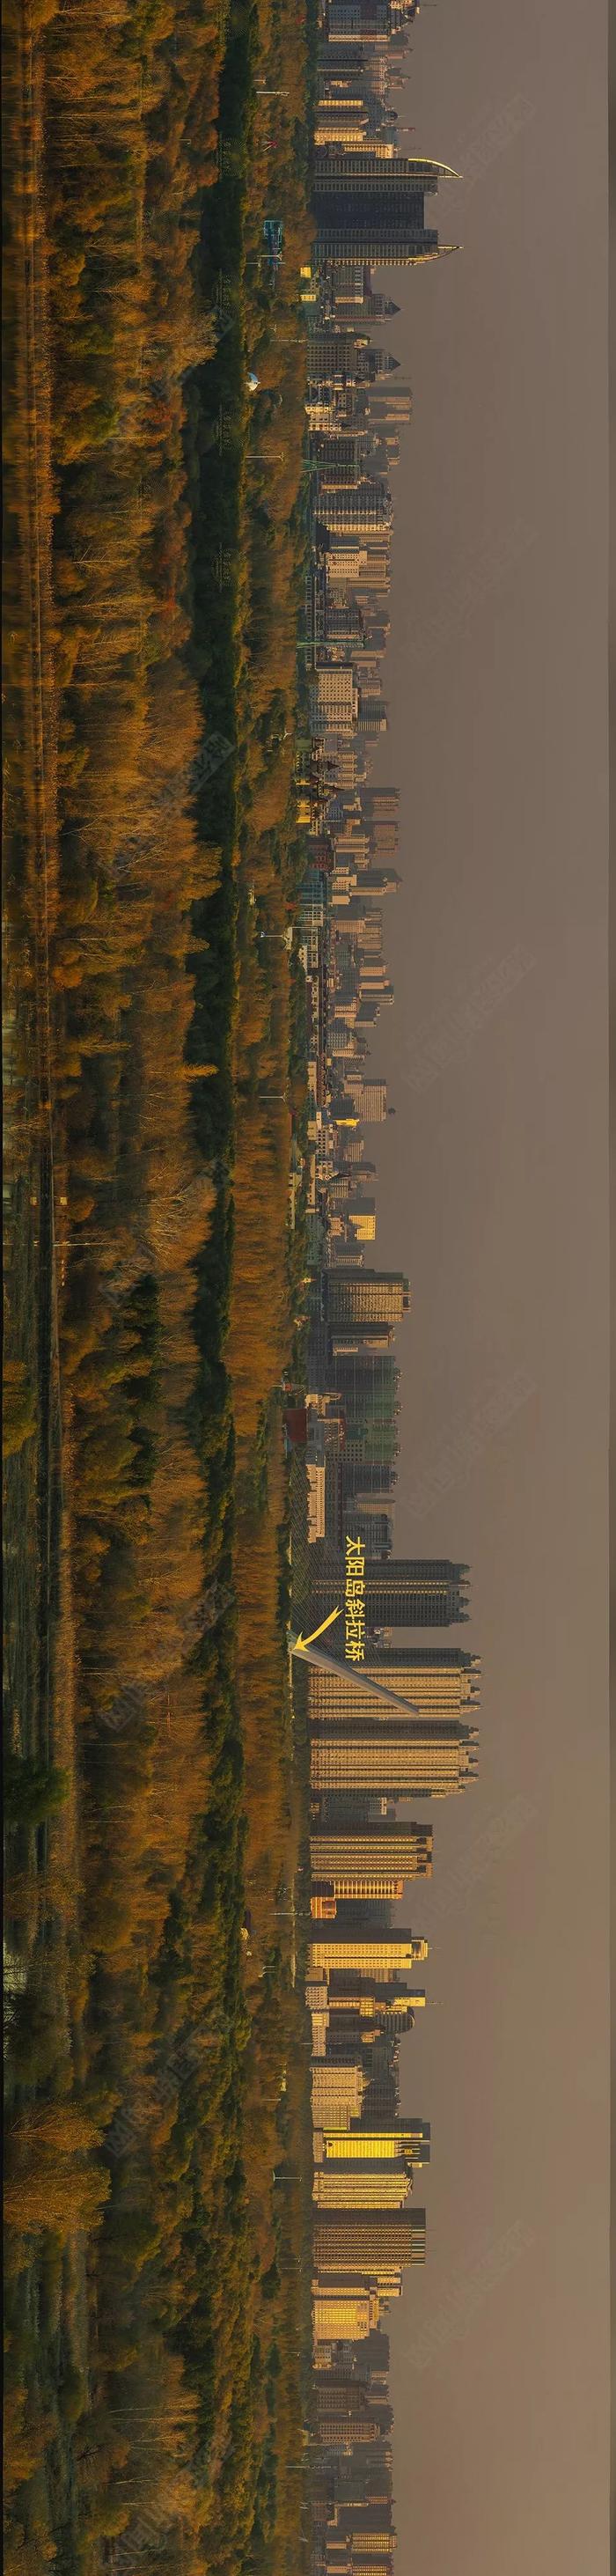 巨幅丨一张图拍下哈尔滨市区段松花江上八座桥#另类视角看冰城#